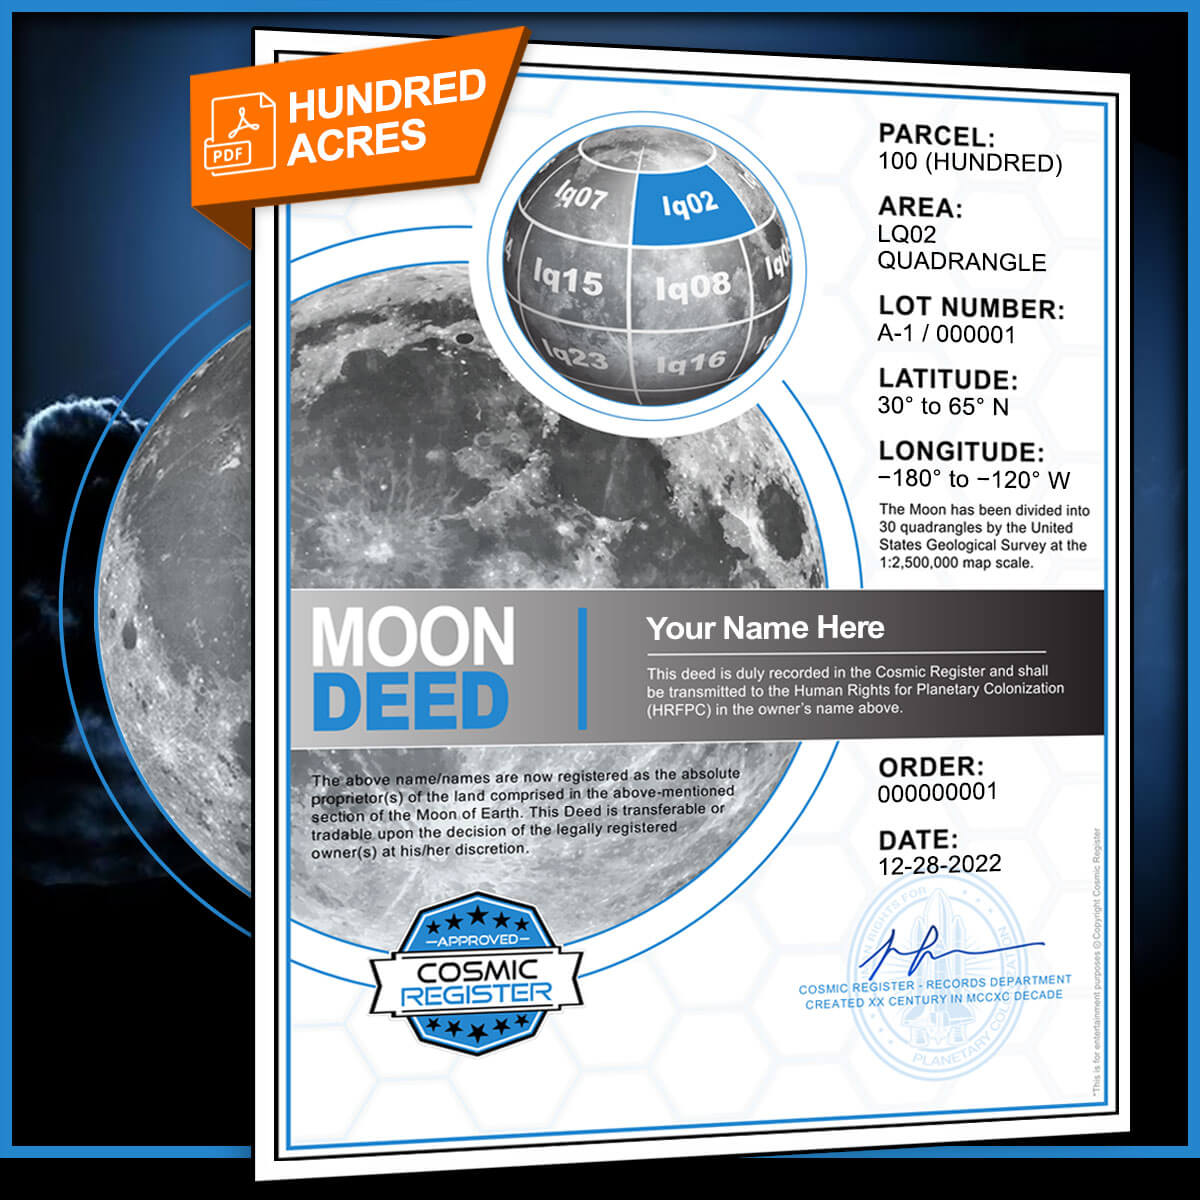 lunar land deed pdf email download cosmic register 100 acres of land